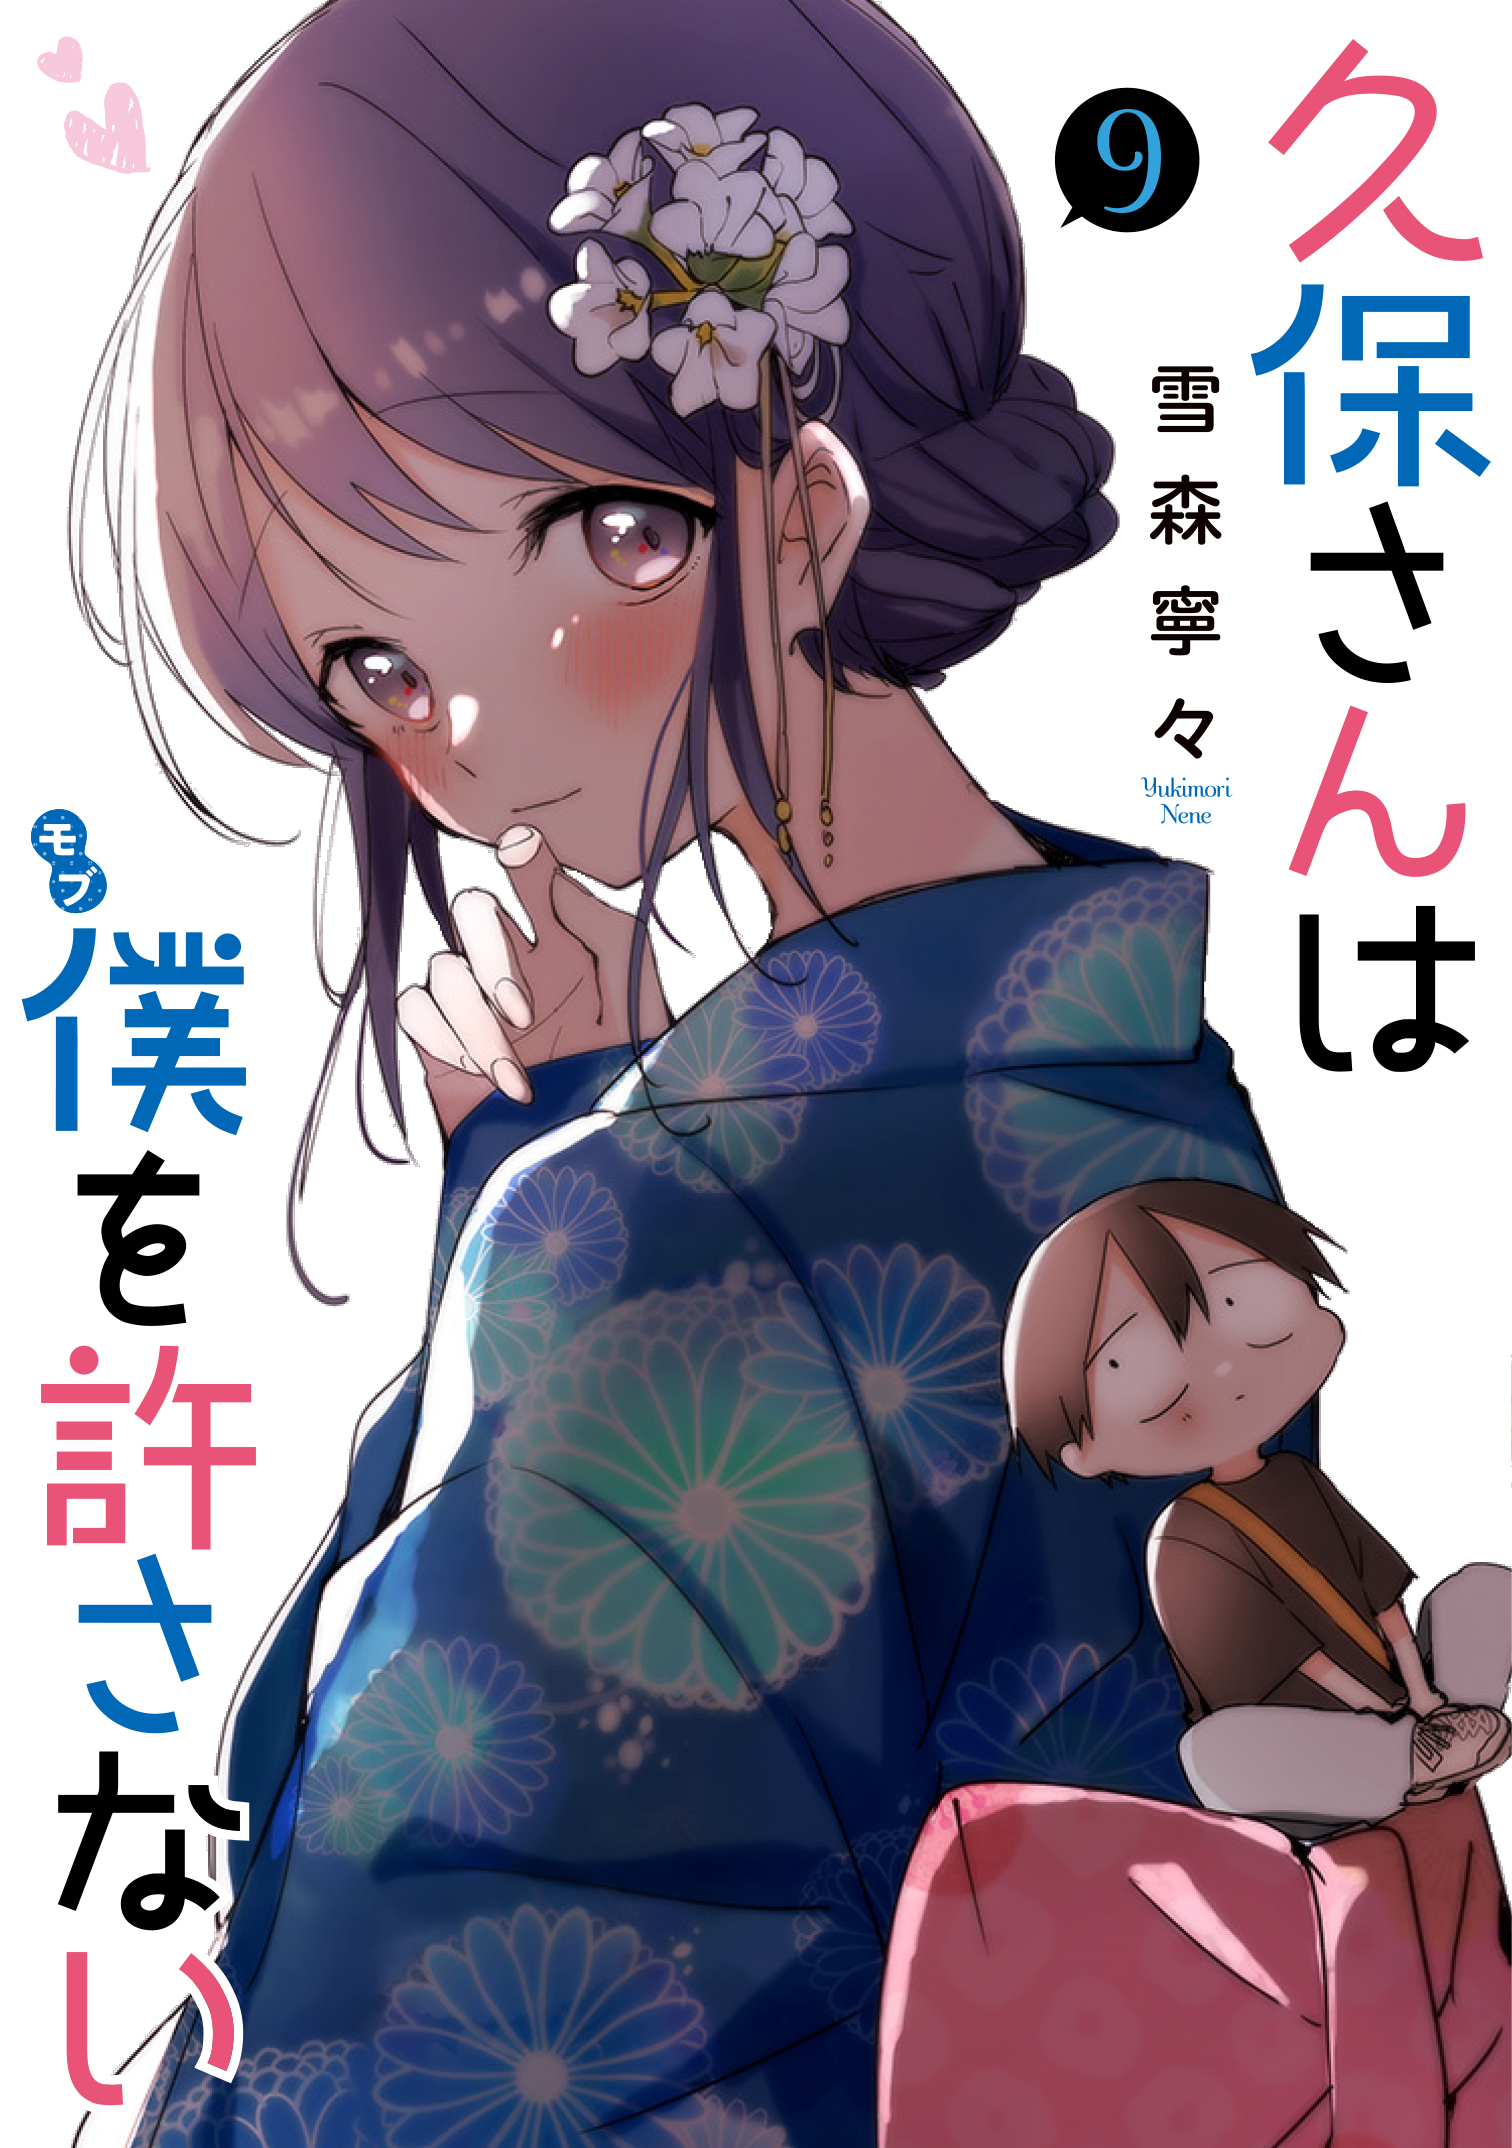 Kubo-san wa Mob wo Yurusanai (Pre-serialization) - MangaDex